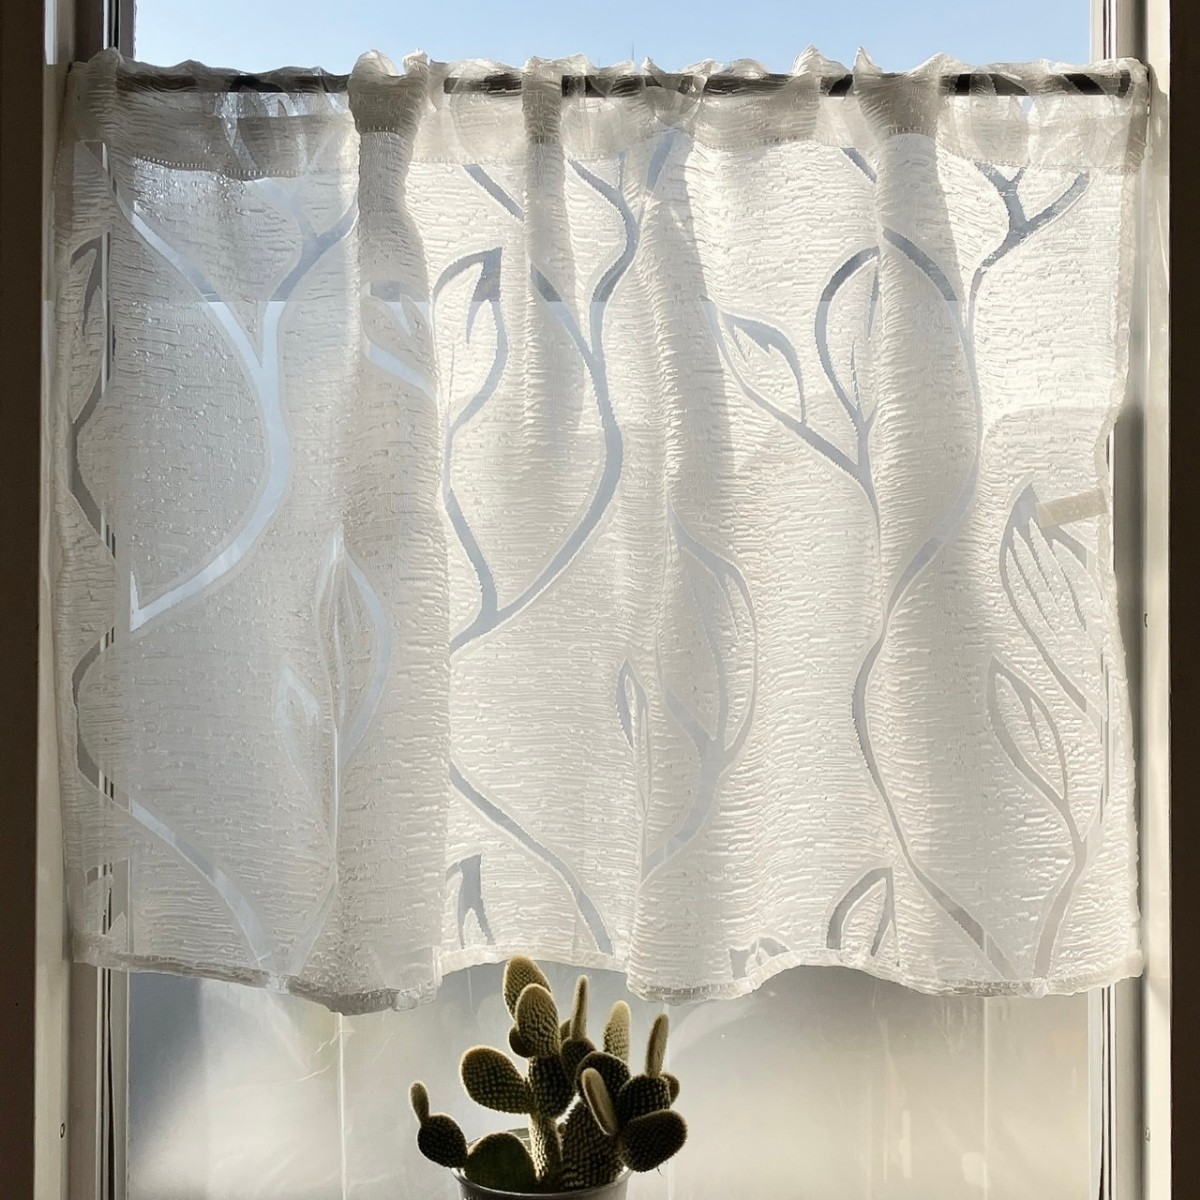 宽 100 厘米 x 长 55 厘米 白色咖啡厅窗帘 叶泡泡 1 片 小窗户咖啡厅窗帘 手工制作, 蕾丝窗帘, 适用于宽度100cm, 长度小于100cm